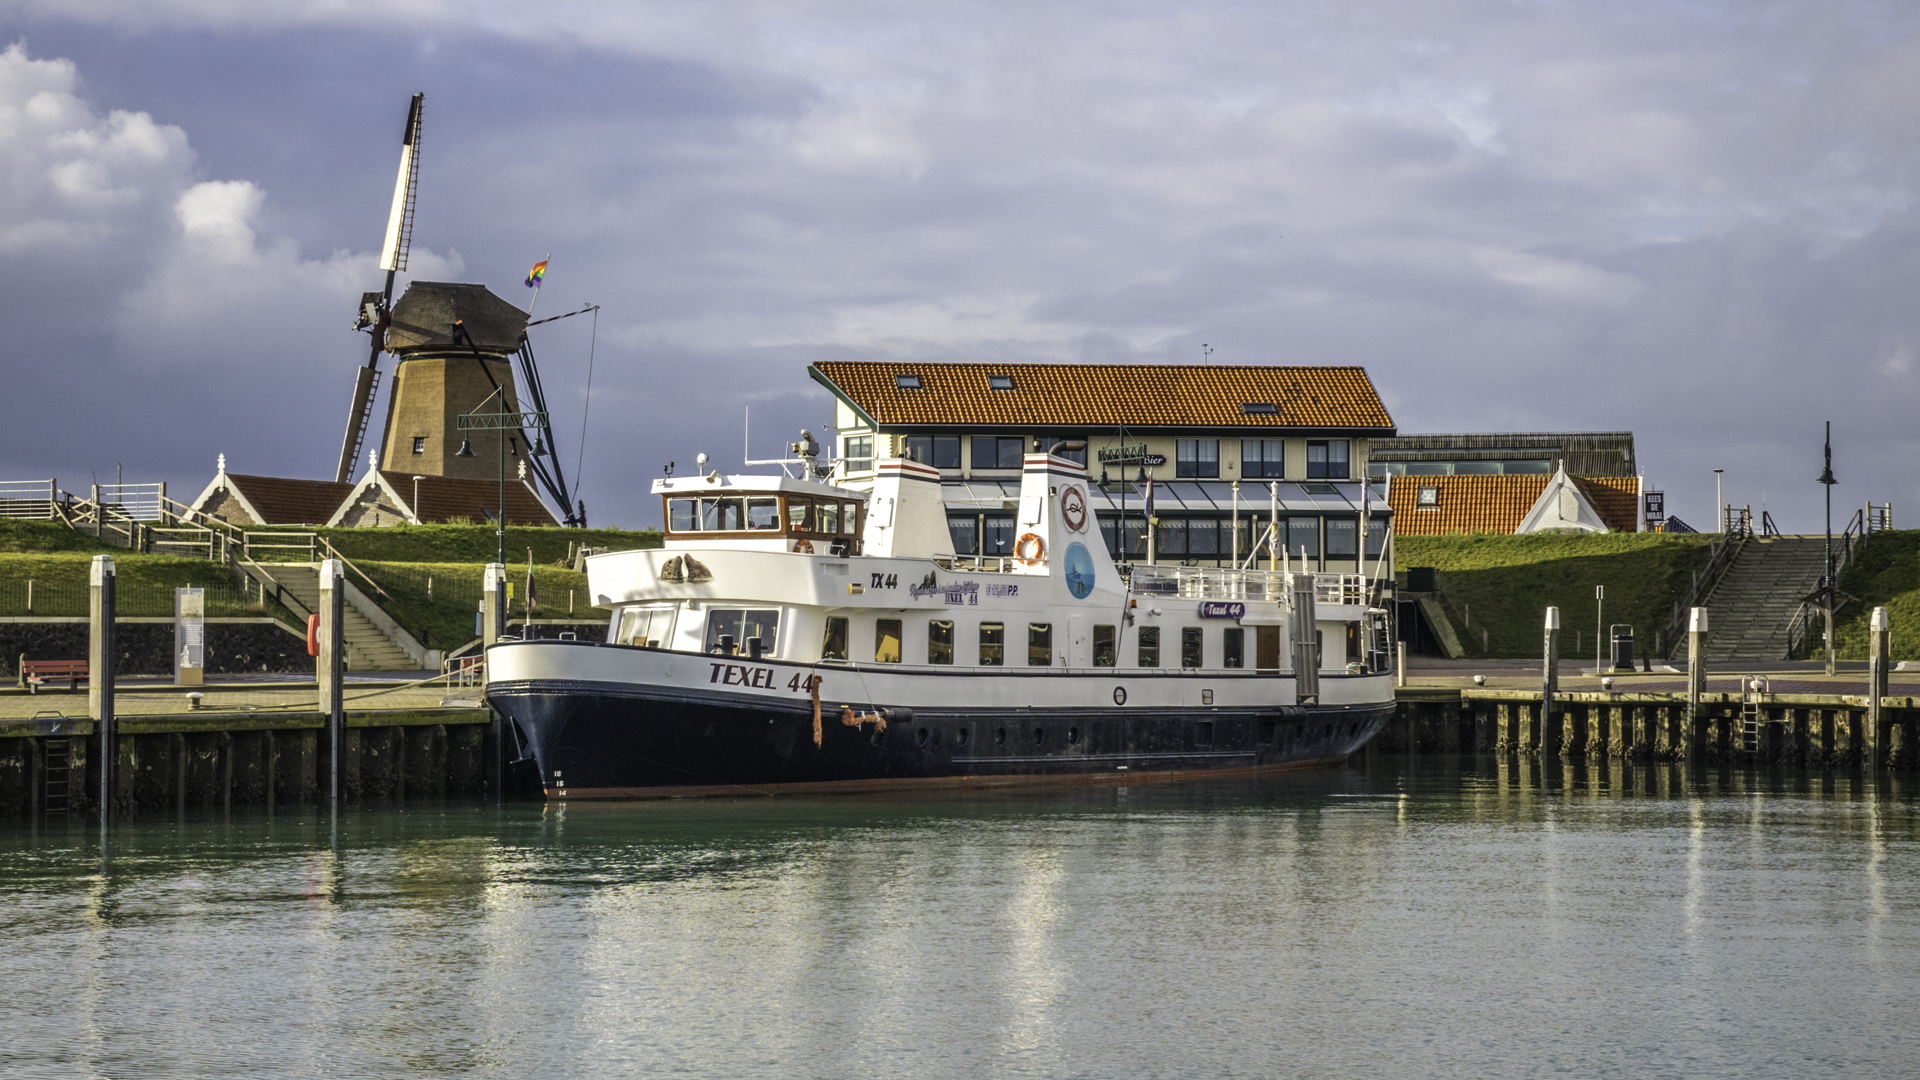 Ook in deze periode kun je uitstekend meevaren op de TX44 robbenboot op Texel!